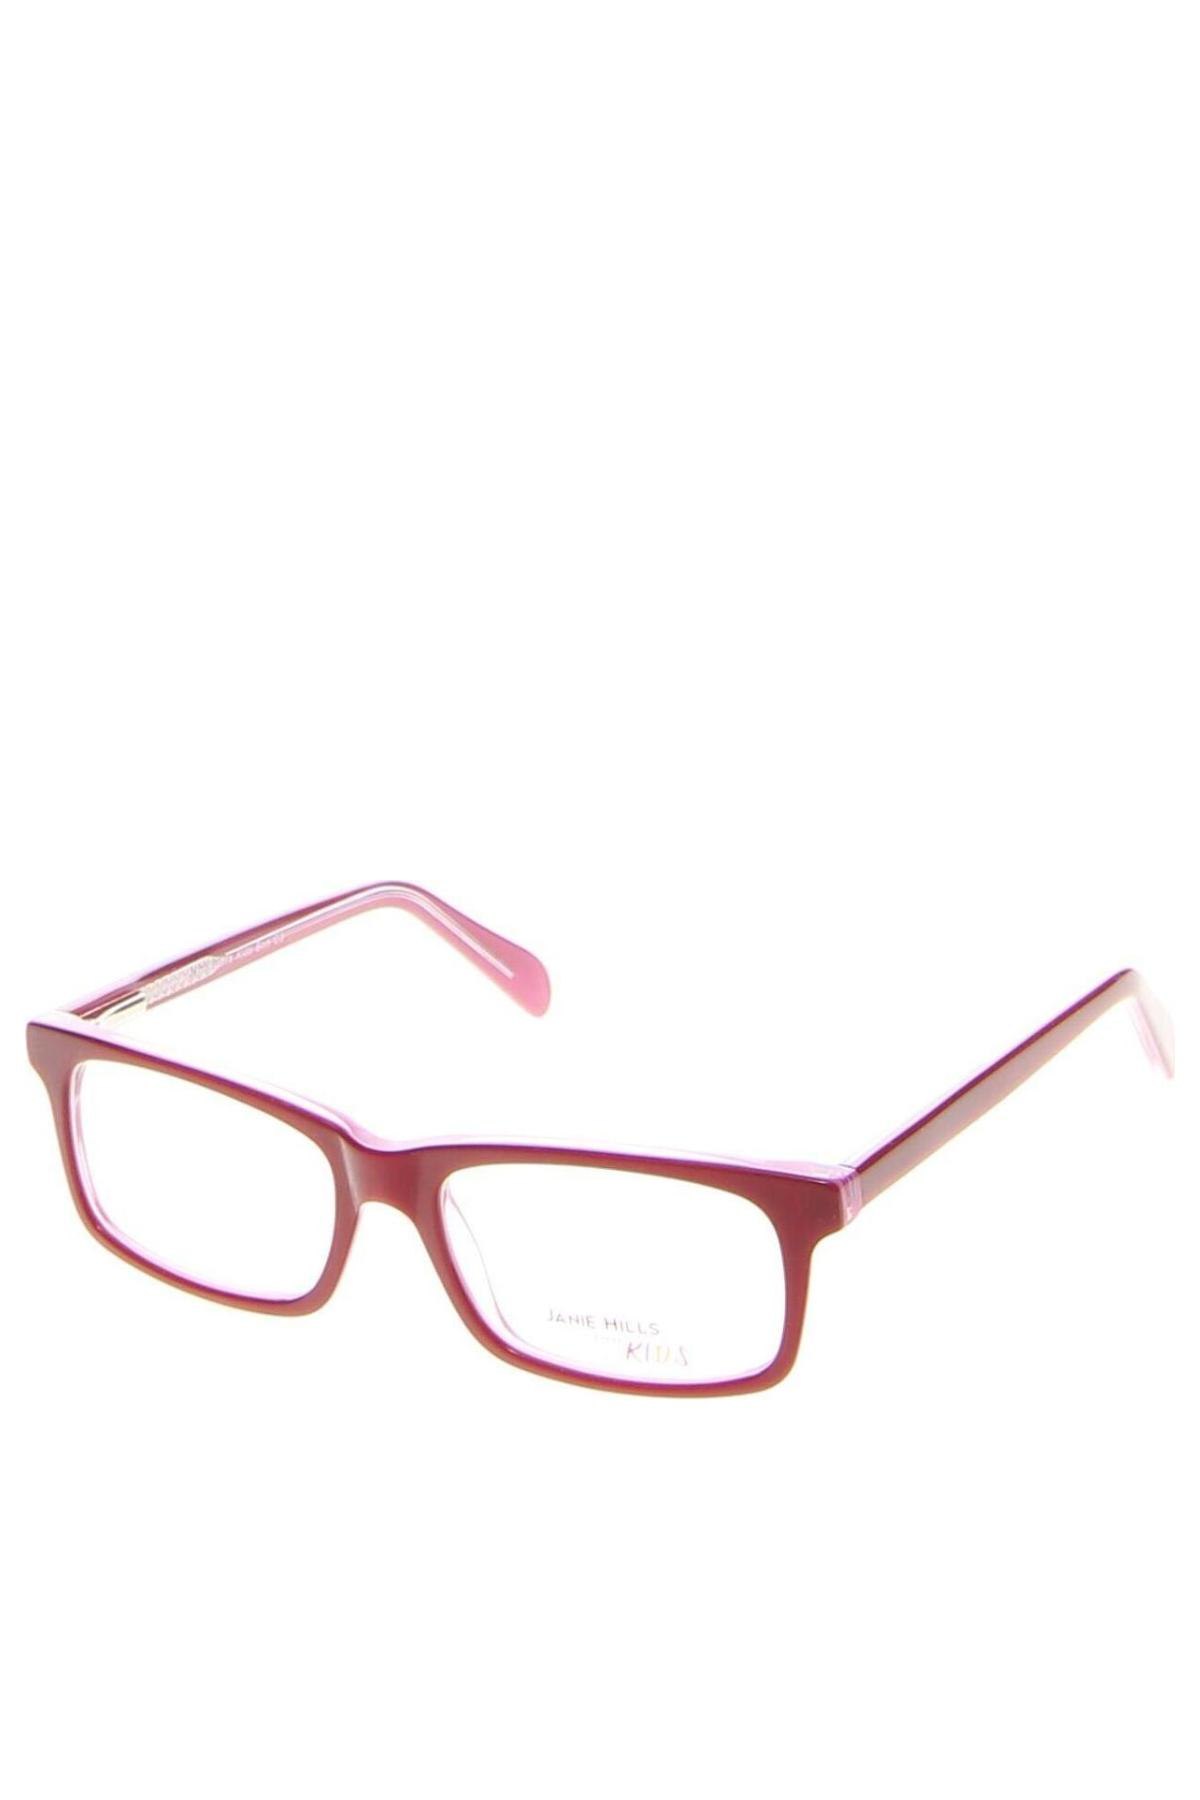 Brillenfassungen für Kinder Janie Hills, Farbe Rot, Preis 27,90 €